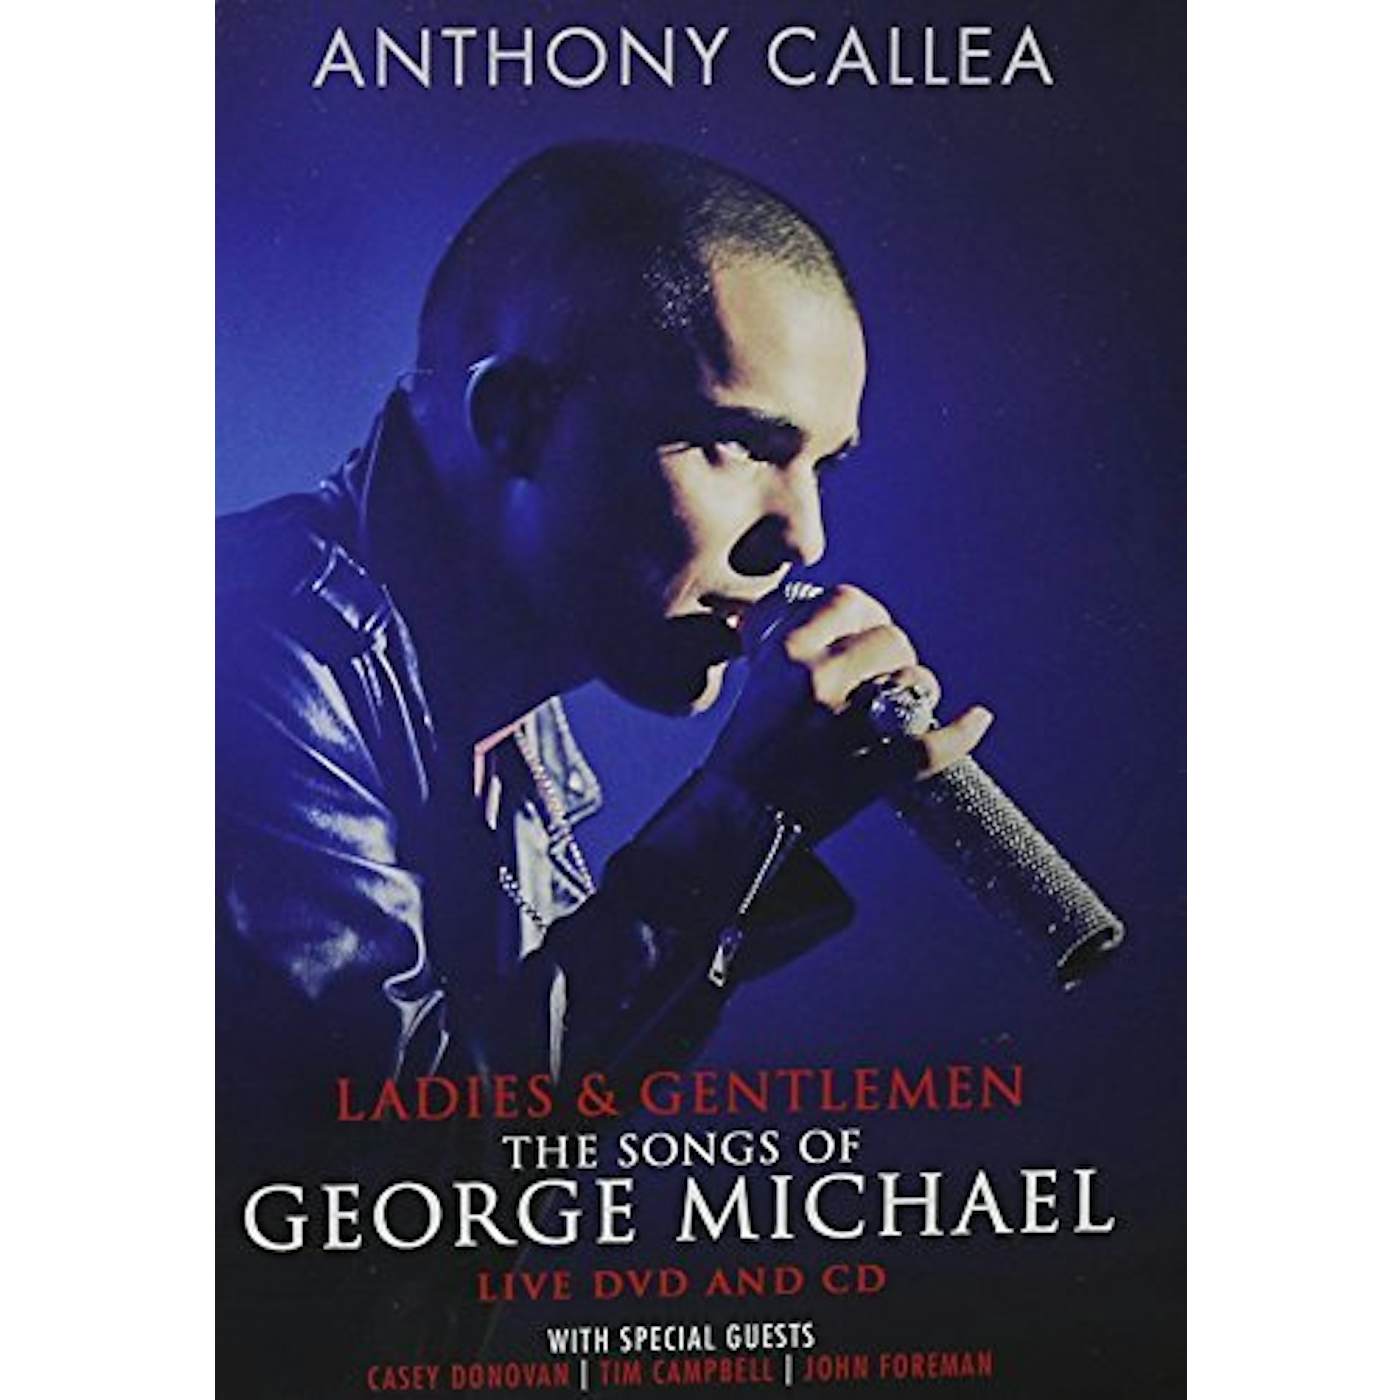 Anthony Callea LADIES & GENTLEMAN THE SONGS OF GEORGE MICHAEL DVD